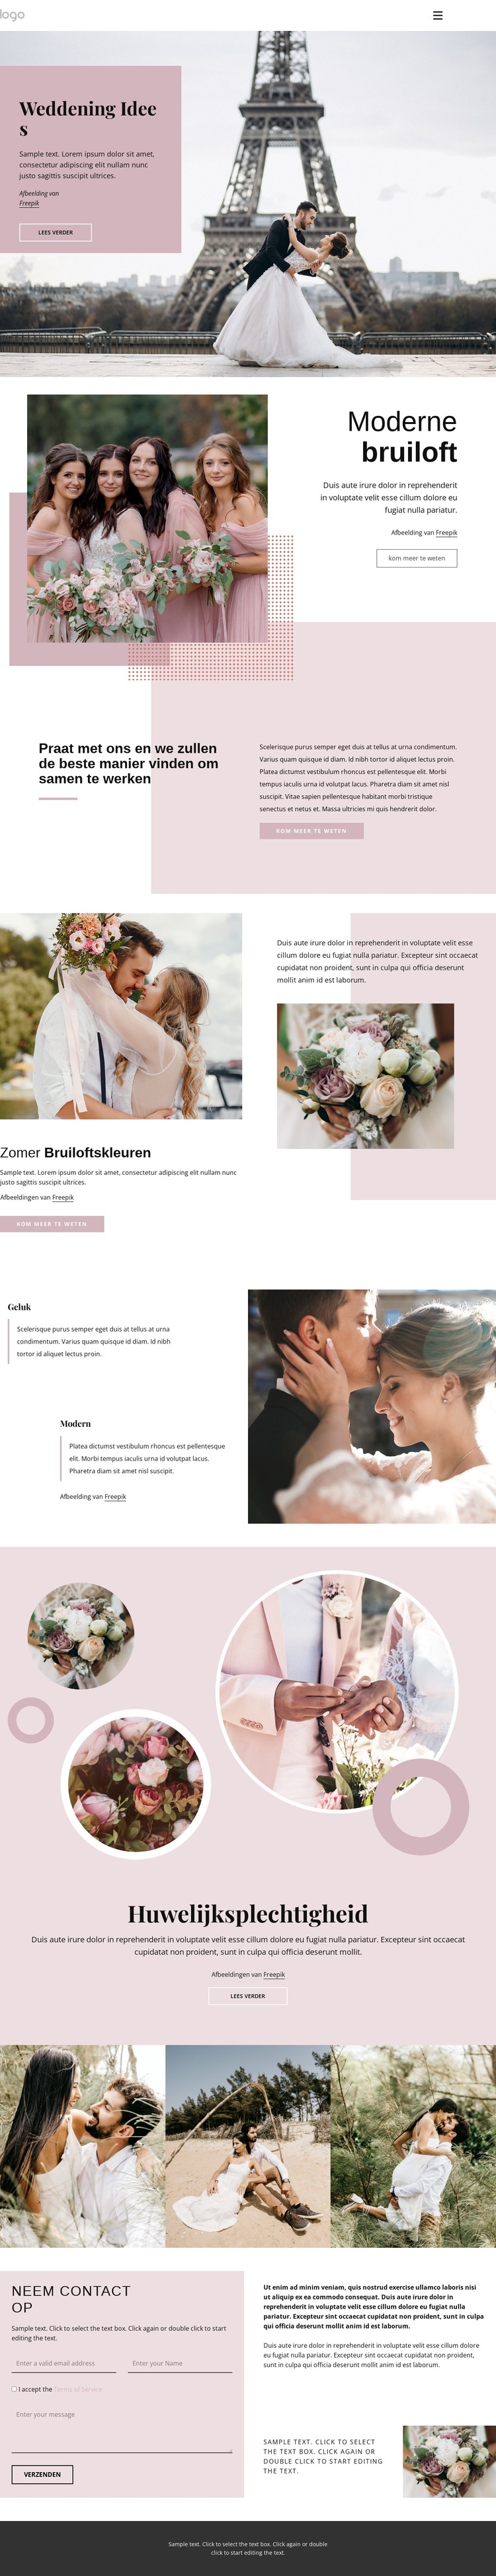 Unieke huwelijksceremonie Website sjabloon